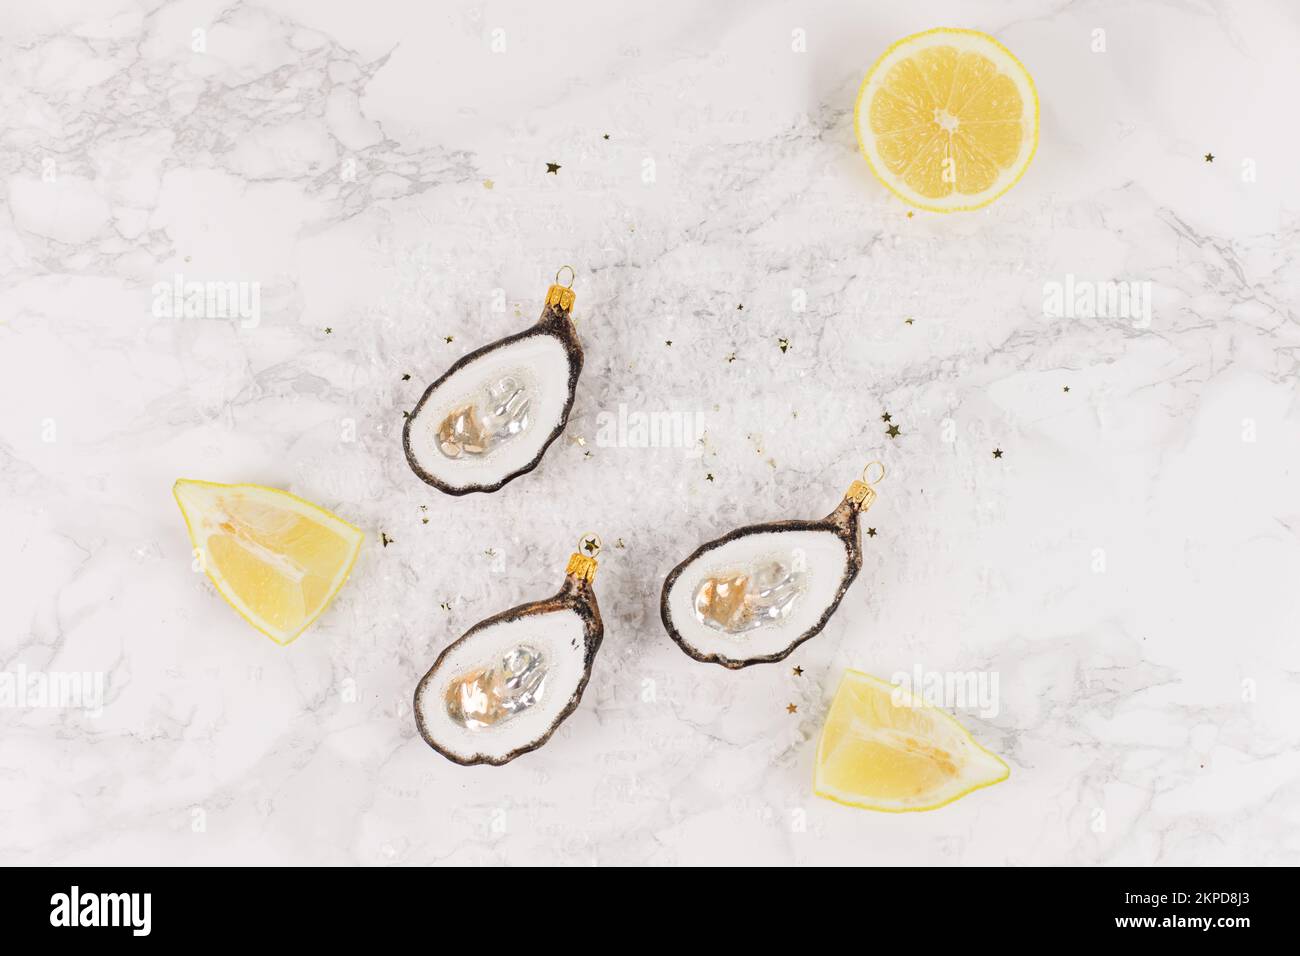 Drei Weihnachtsbaumkugeln in Form einer Auster liegen auf einem Marmortisch. Glitzer, Sterne und Zitronenscheiben schmücken das Bild. Stockfoto